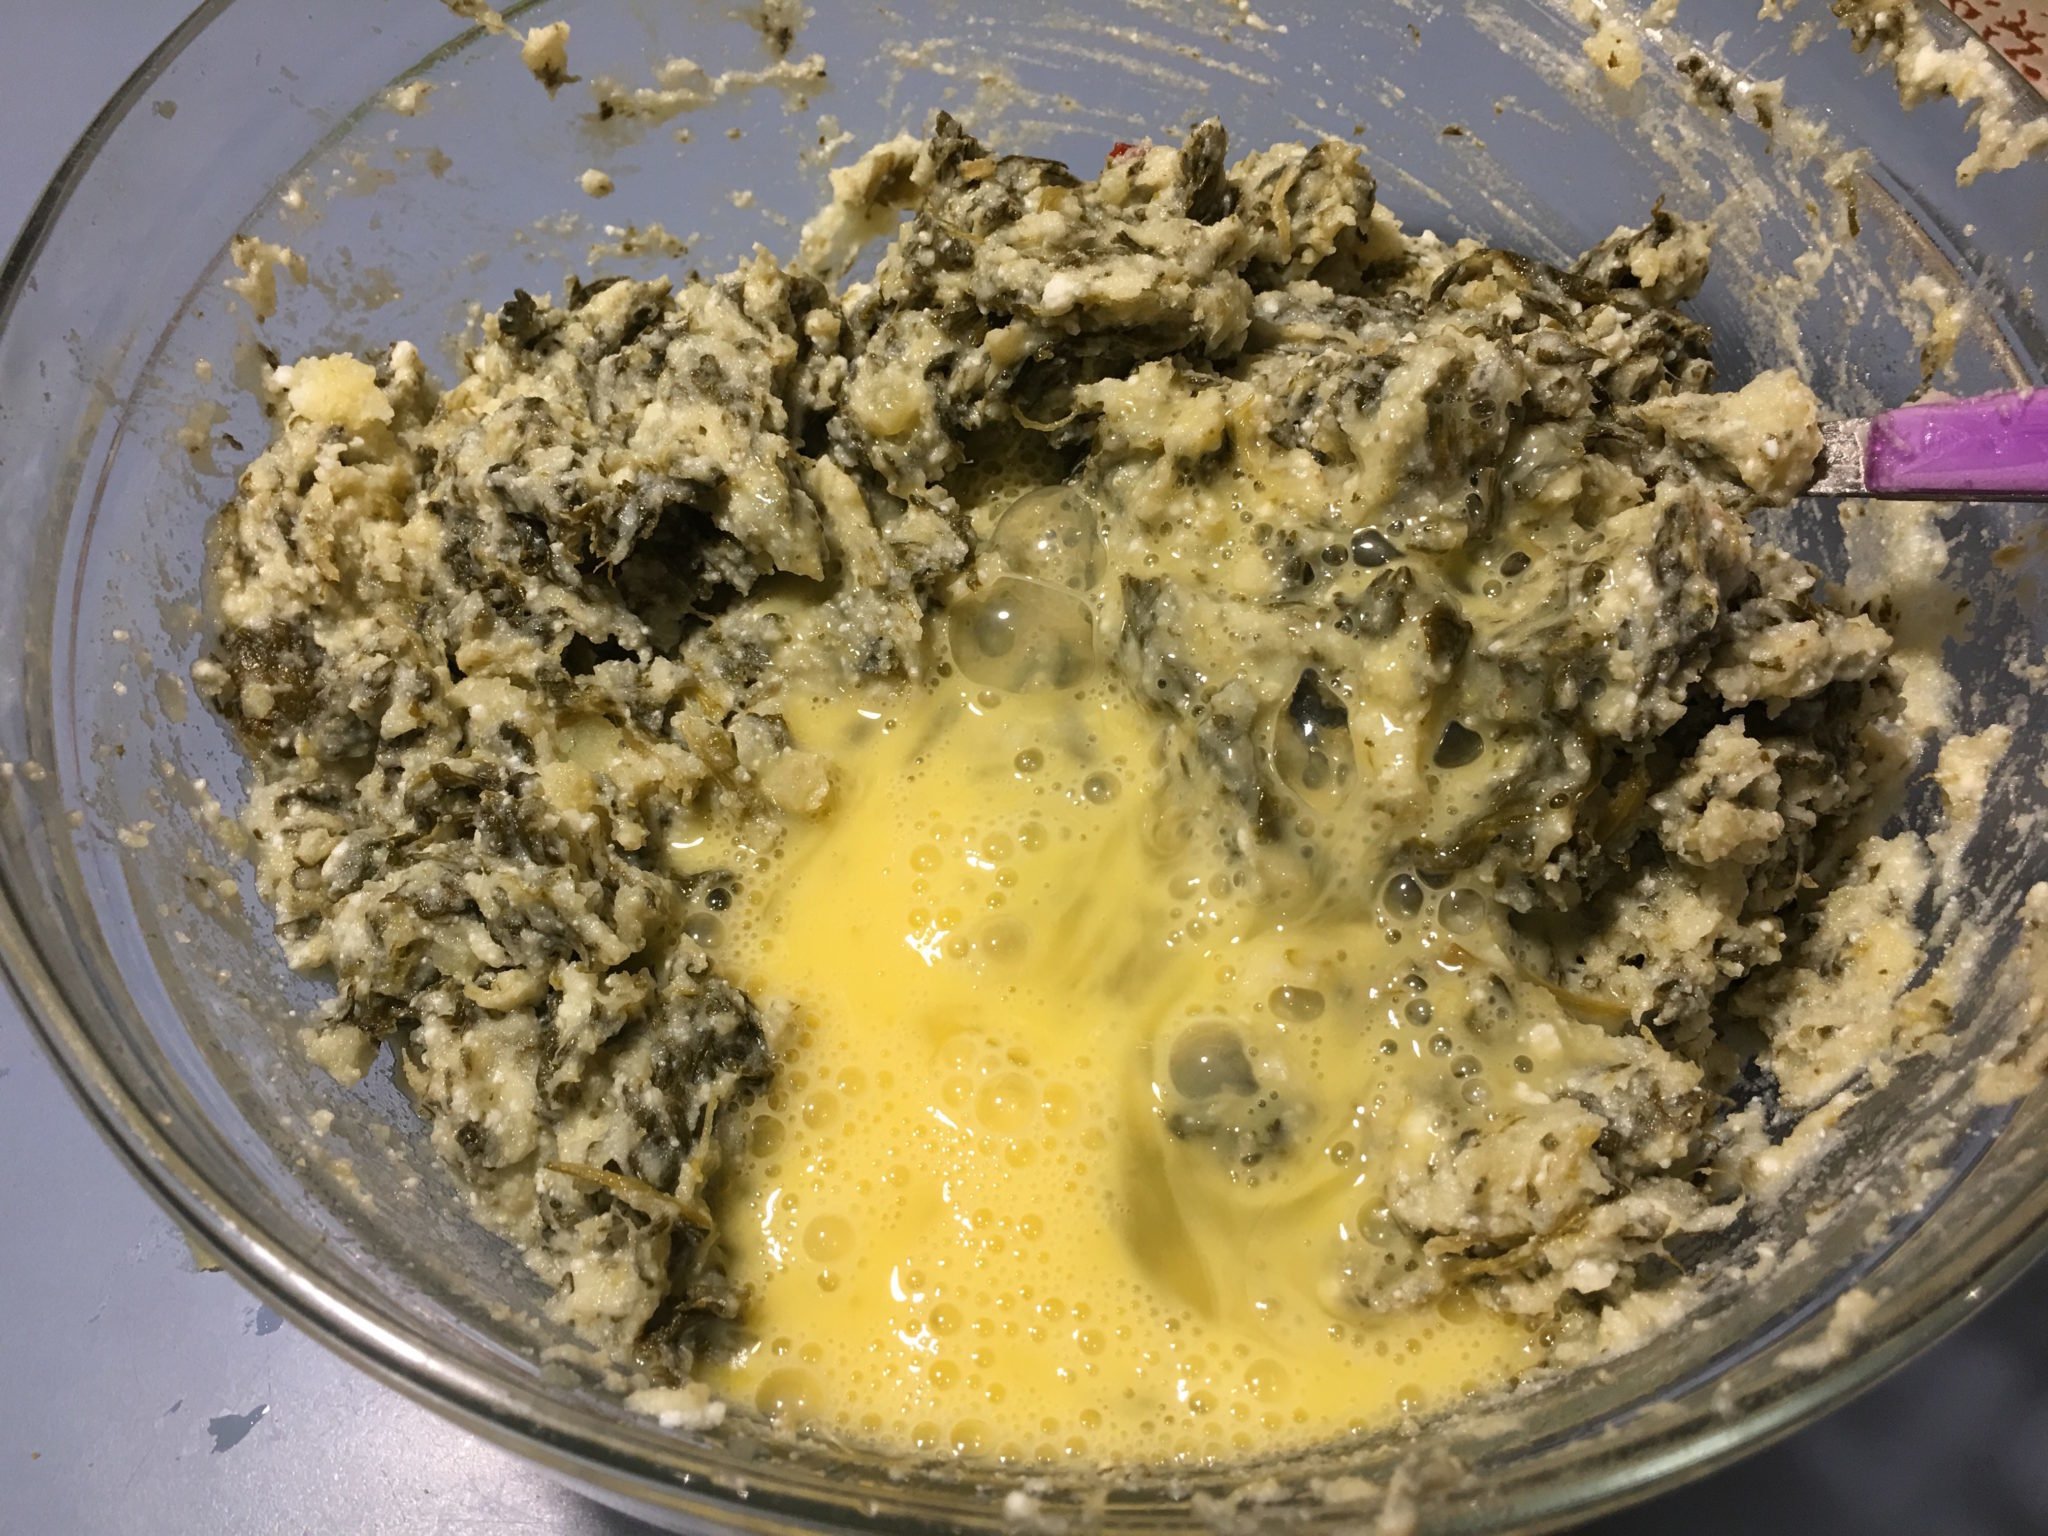 Sformato di friarielli ricotta e patate - le uova aggiunte all'impasto